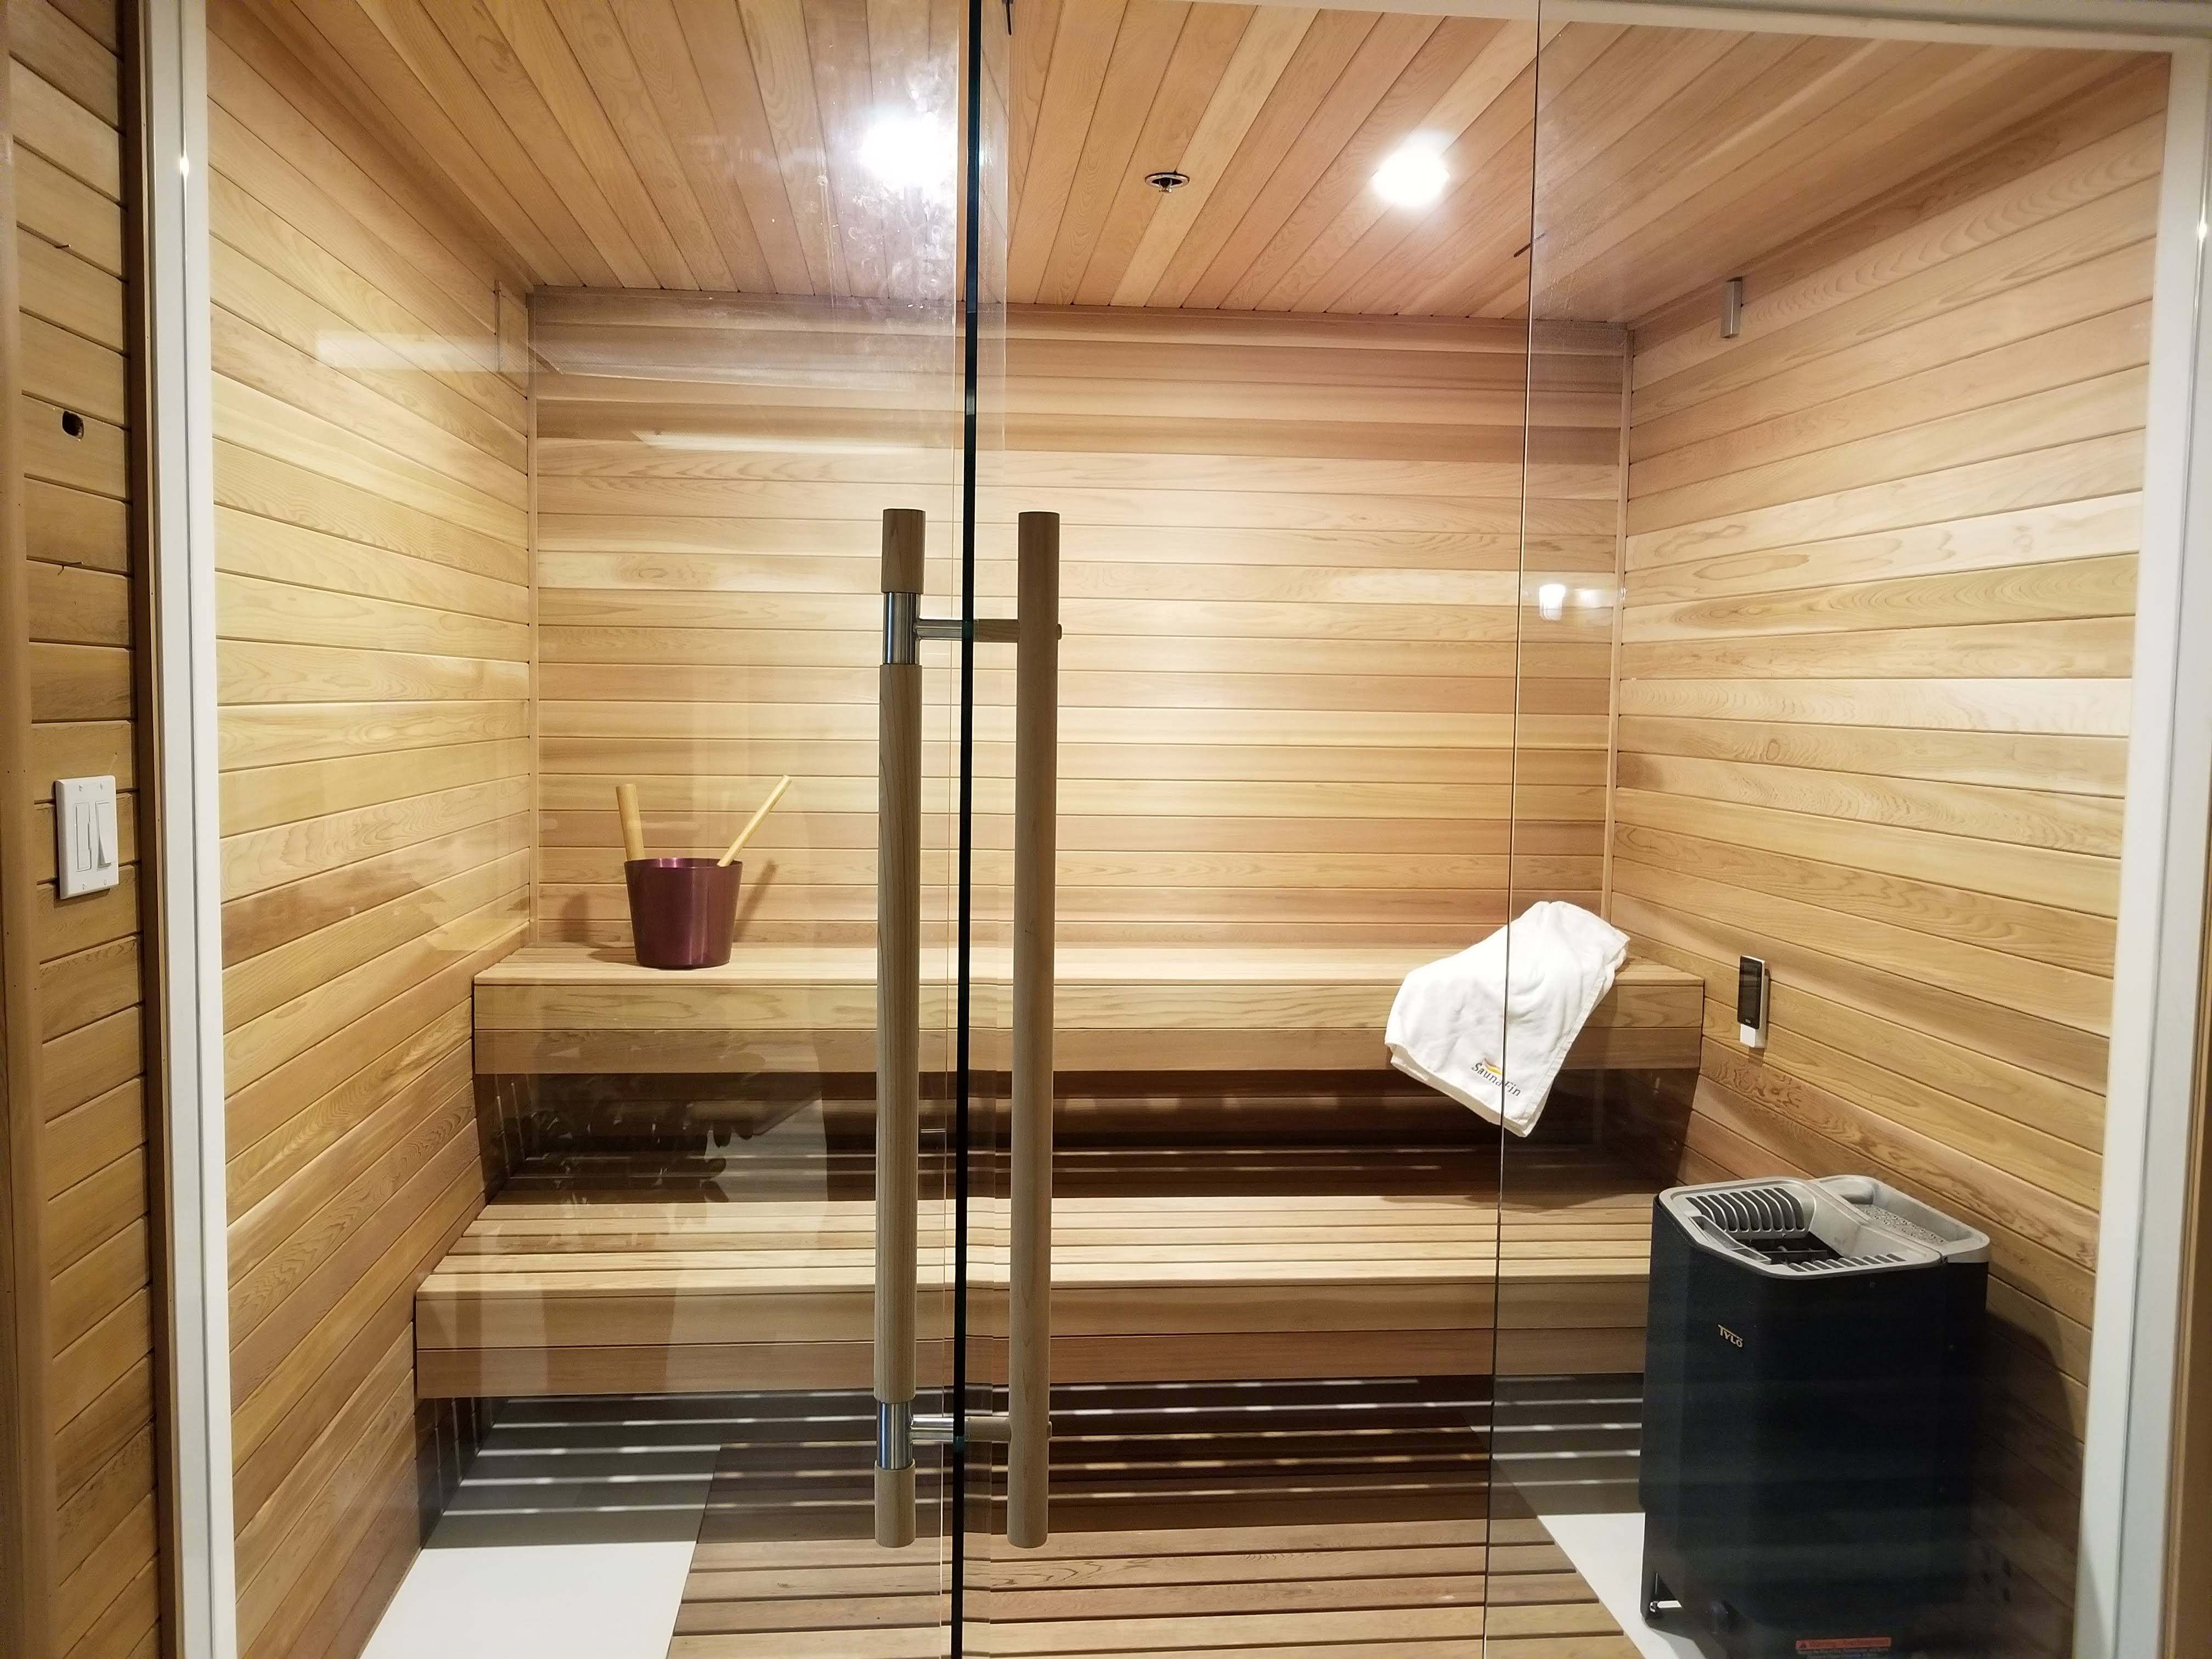 Saunas, Sauna Kits & Steam Baths | Get to Know Saunafin